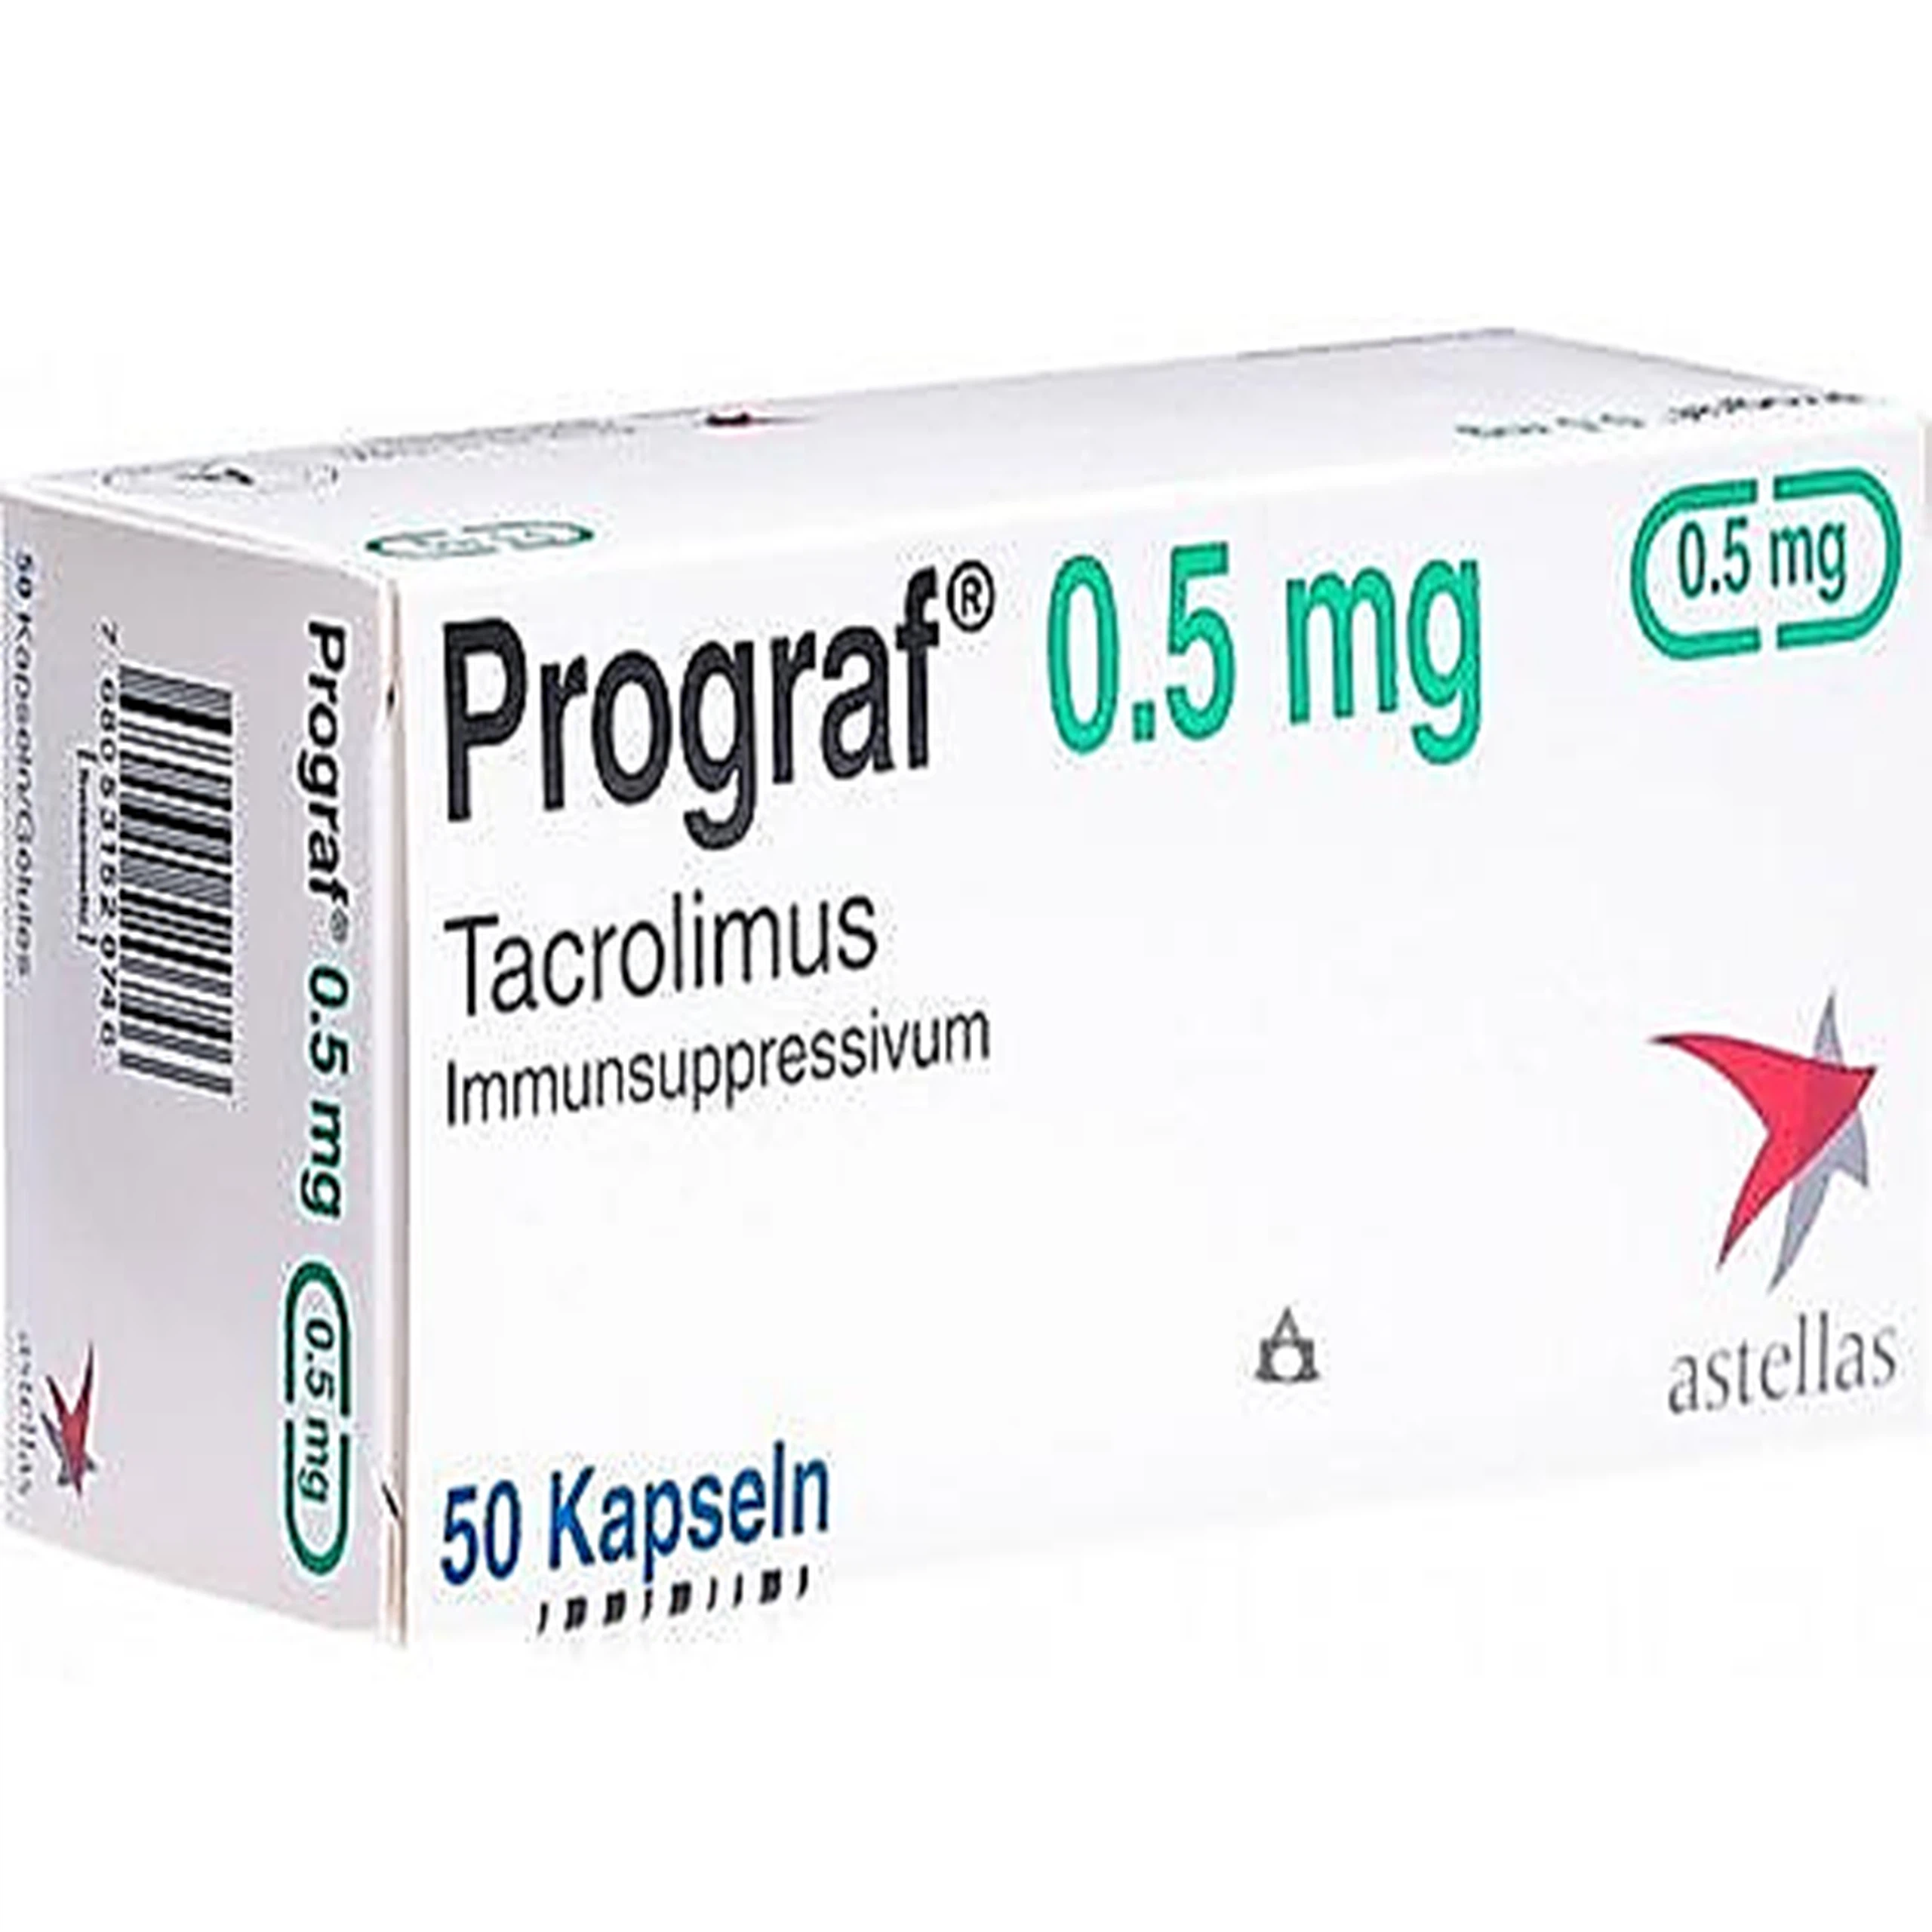 Thuốc Prograf 0.5mg Astellas phòng ngừa sự đào thảo cơ quan ghép thận hoặc gan dị sinh (5 vỉ x 10 viên)